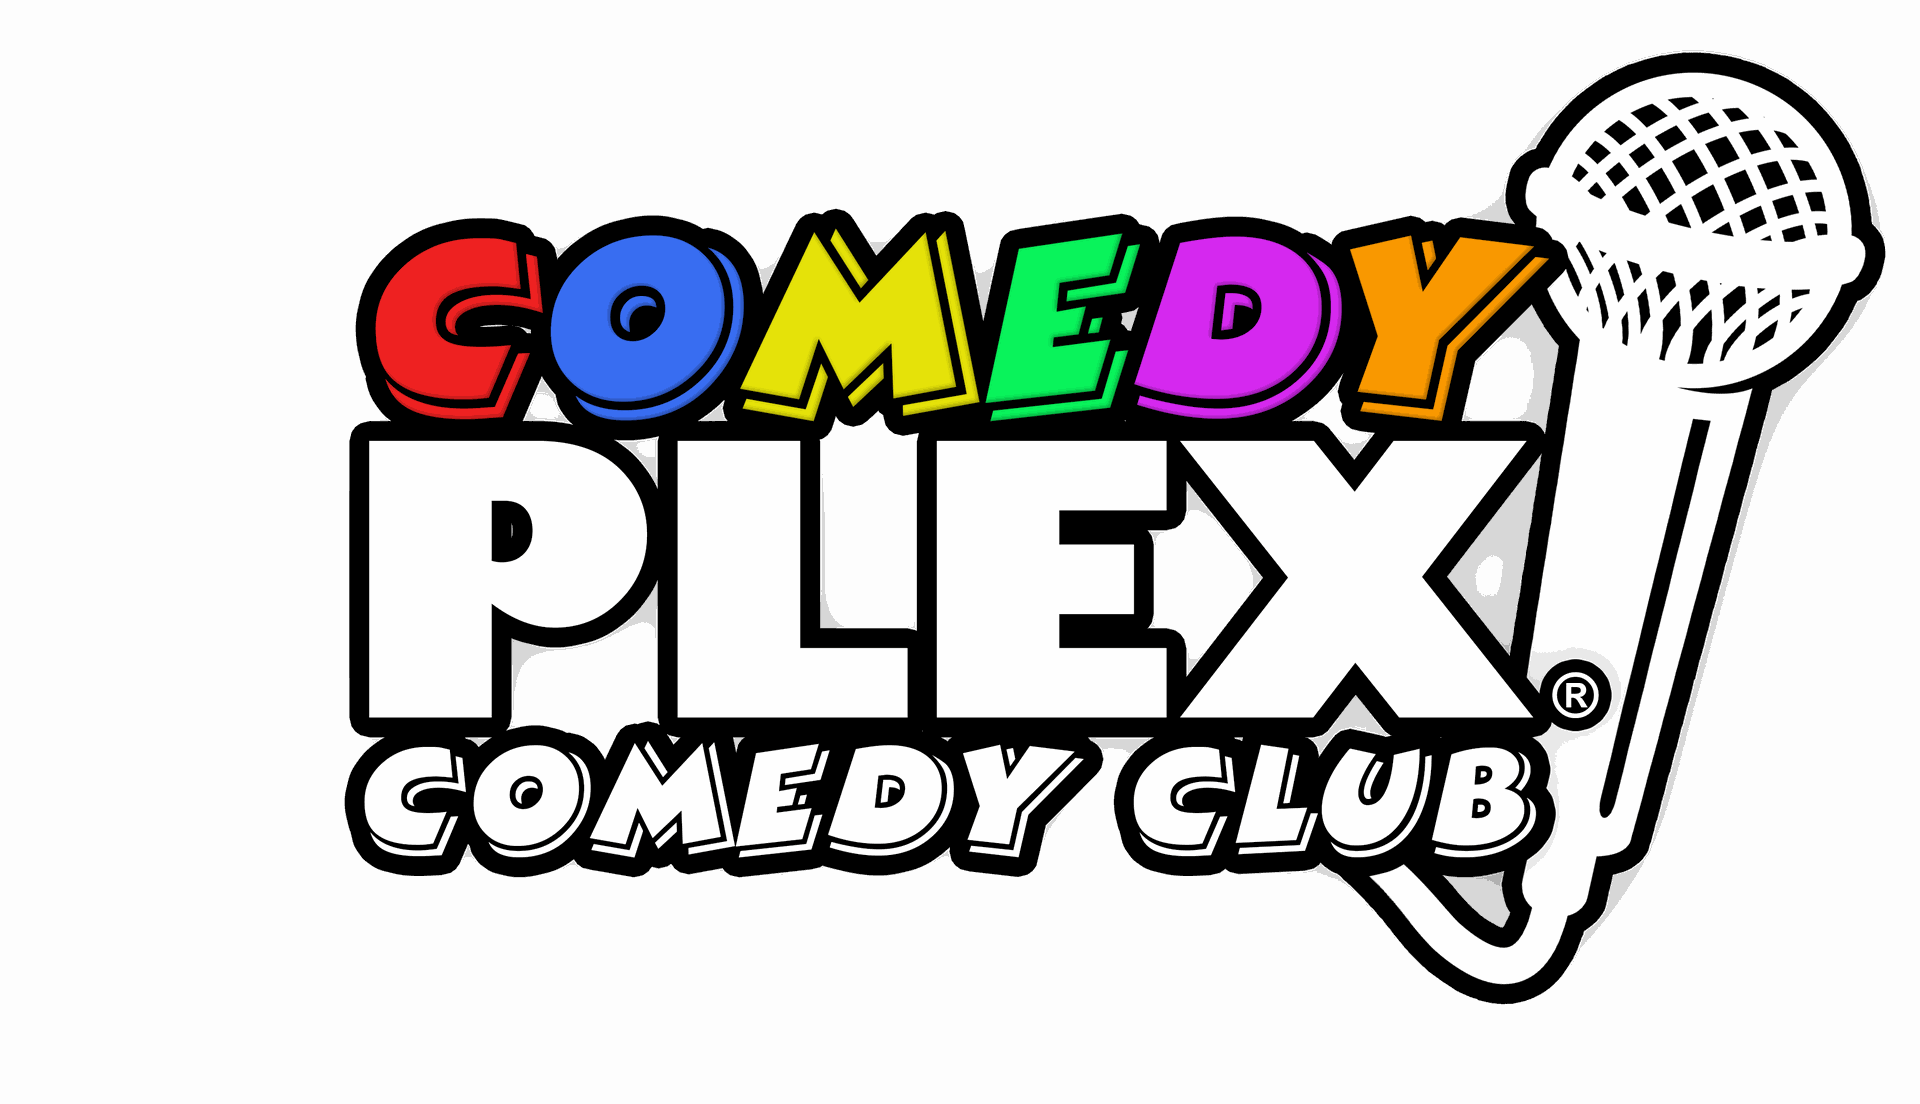 comedy plex comedy club chicago oak park il david harris comedy show davidharrislive